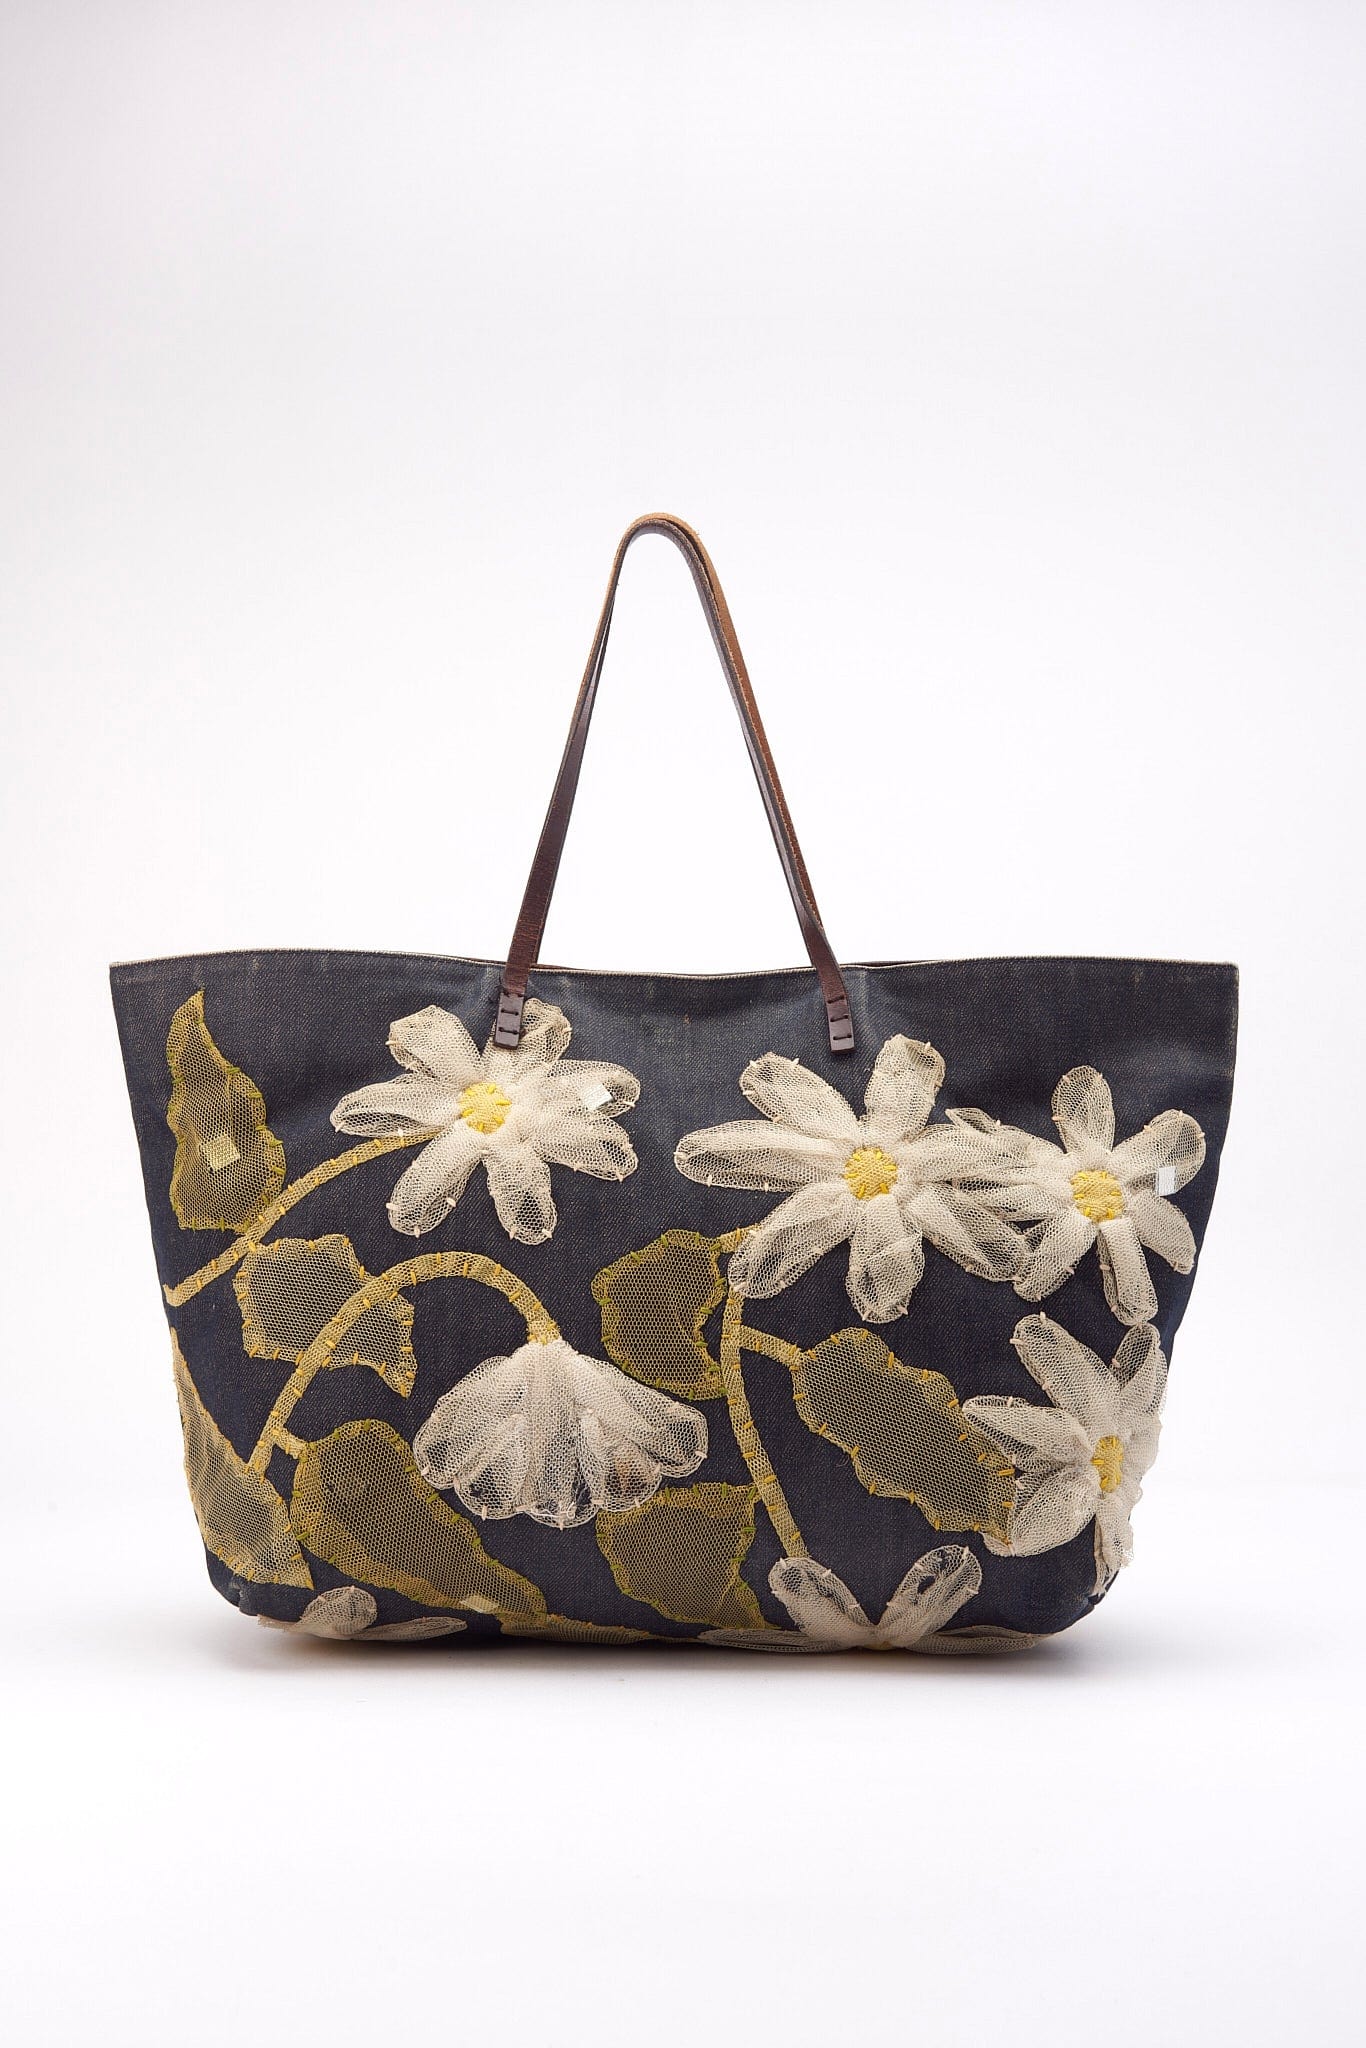 Vintage Fendi Denim Tote Bag with Flowers